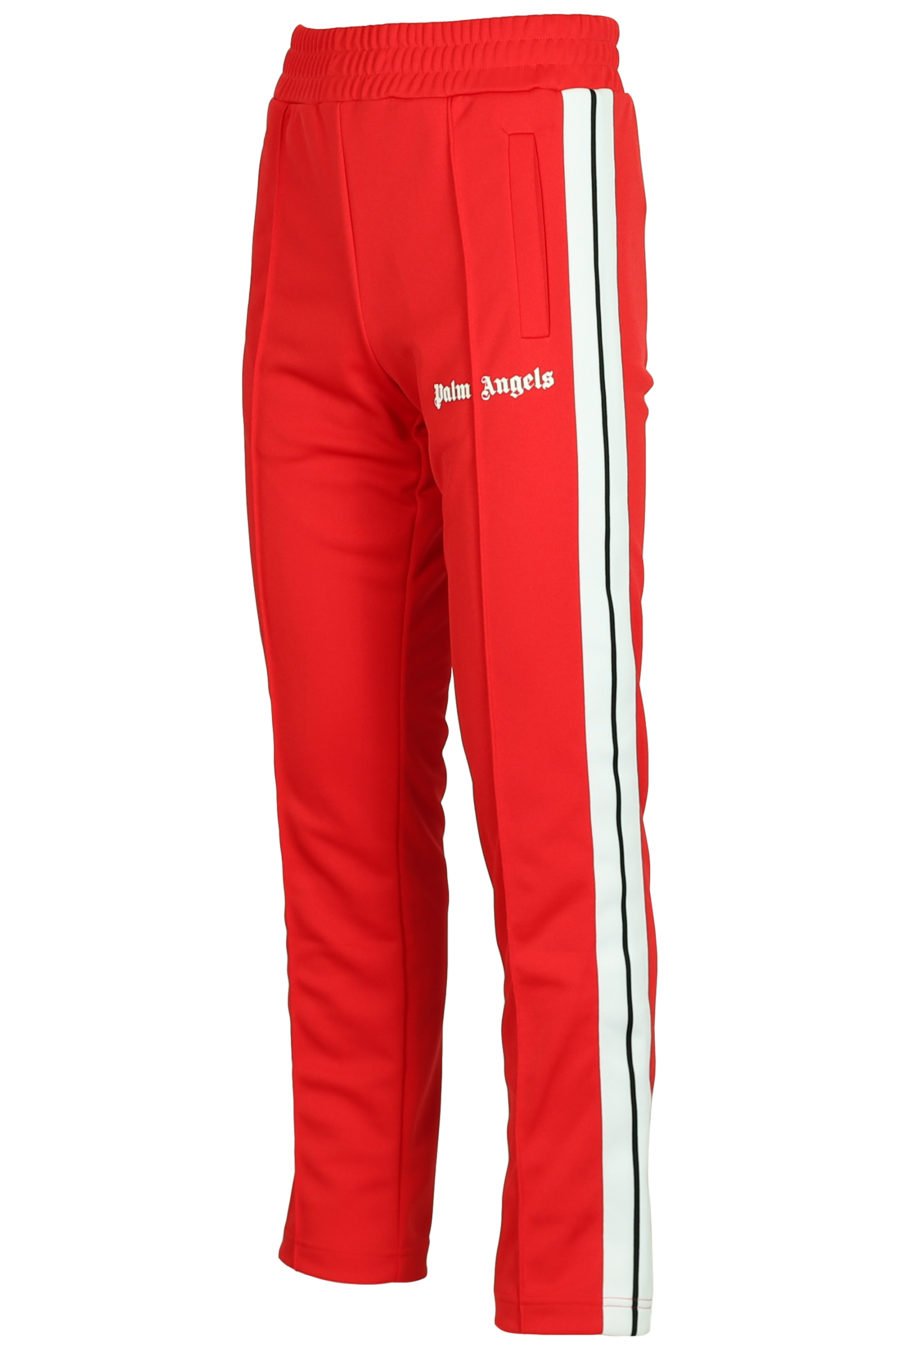 Pantalon rouge avec logo et bandes latérales - IMG 3767